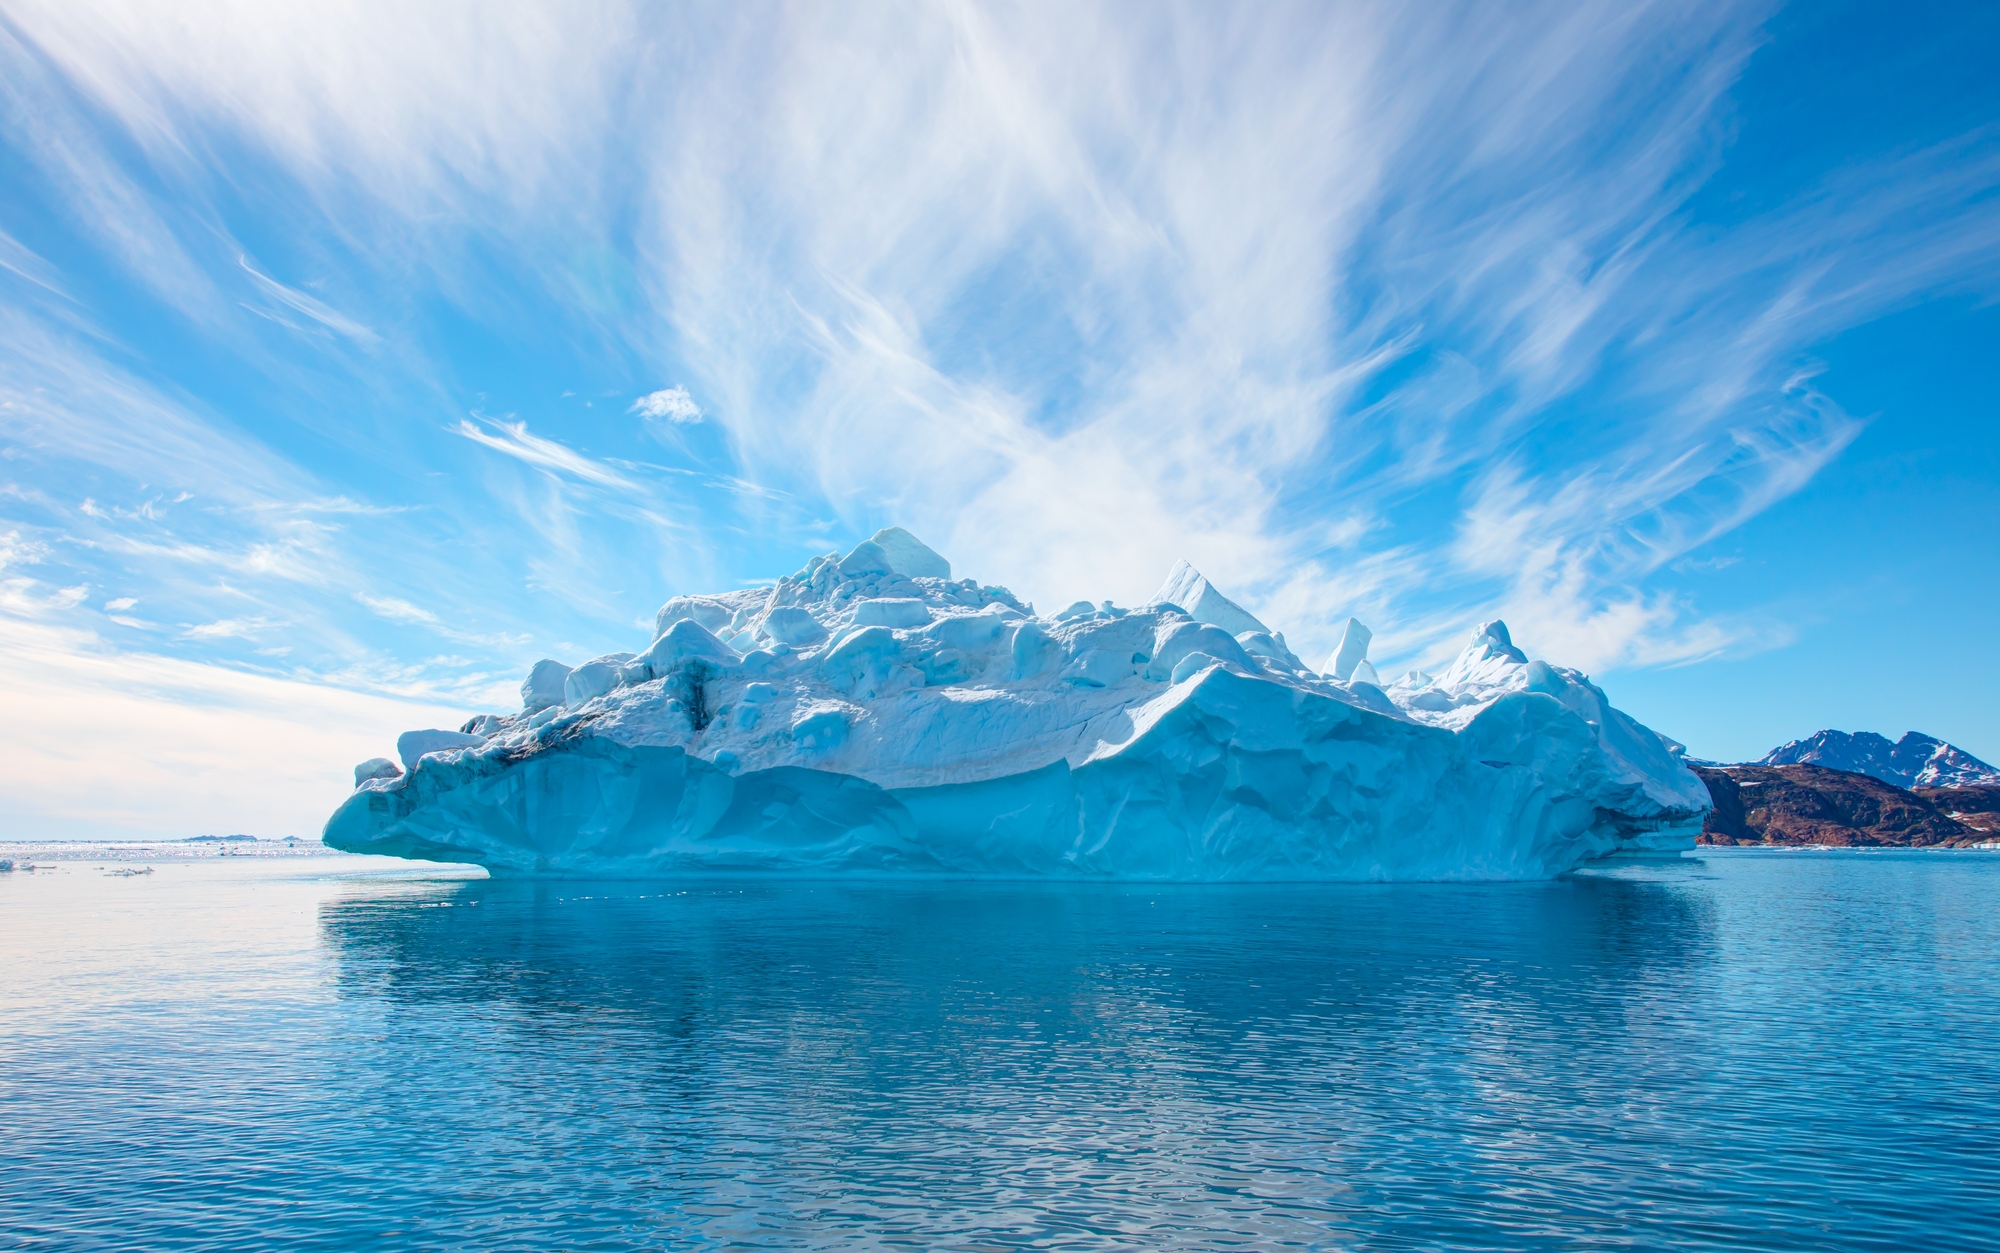 Antarktyczny lodowiec się rozleciał. Skutki odczujemy wszyscy